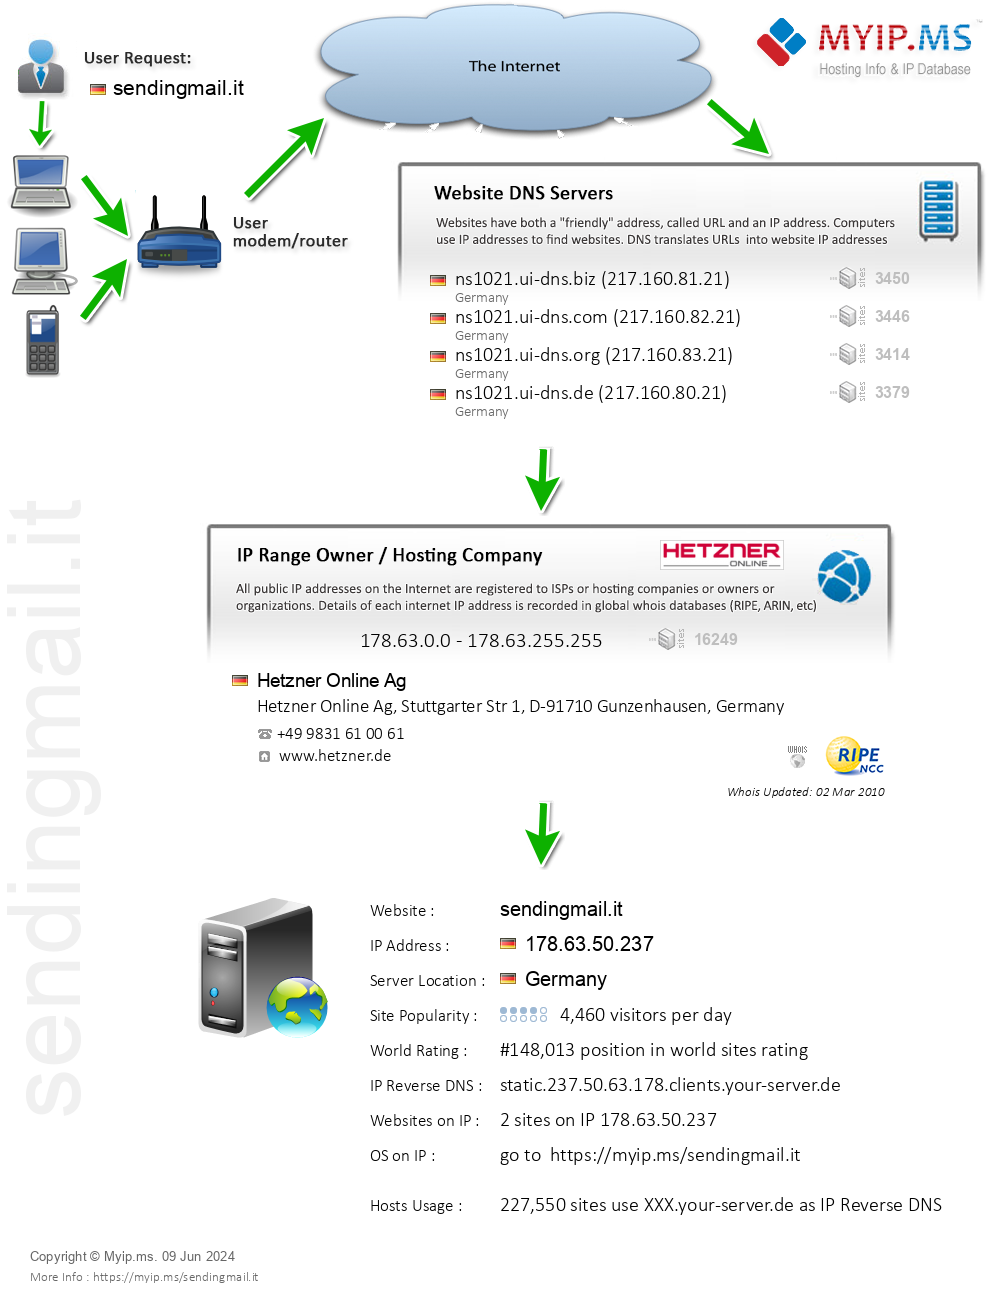 Sendingmail.it - Website Hosting Visual IP Diagram